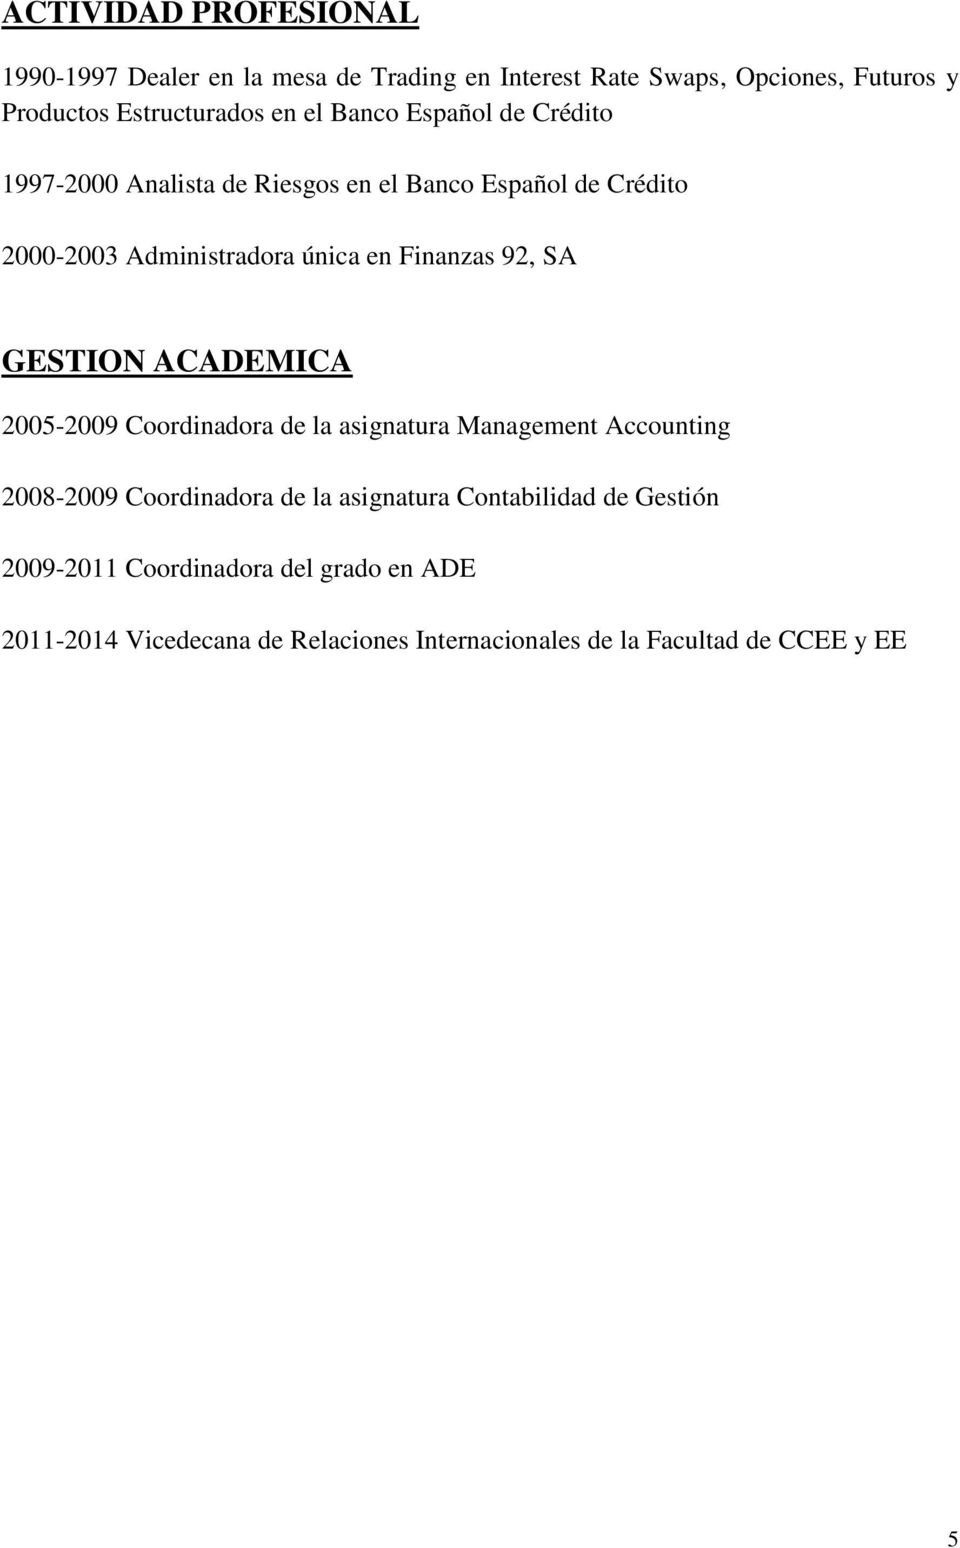 92, SA GESTION ACADEMICA 2005-2009 Coordinadora de la asignatura Management Accounting 2008-2009 Coordinadora de la asignatura